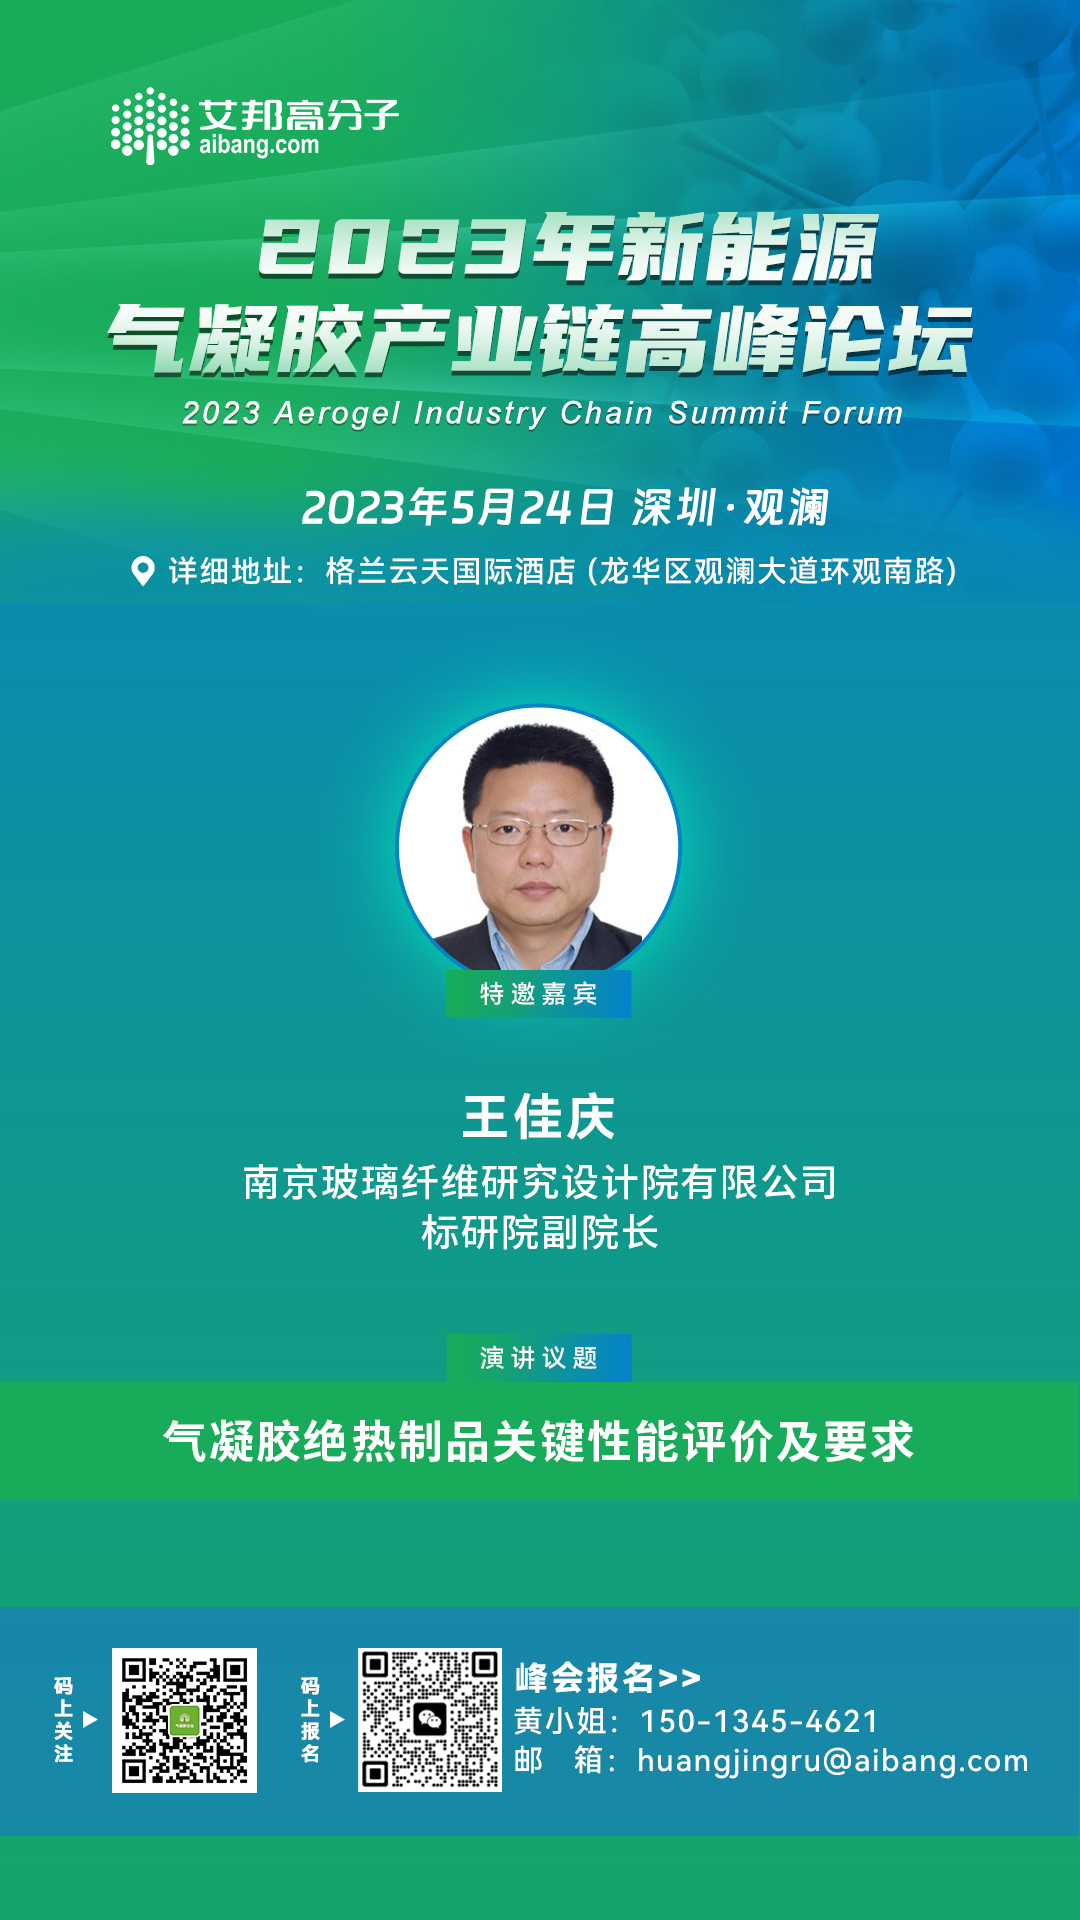 南京玻纤院将出席“2023年新能源气凝胶产业链高峰论坛”并做主题演讲!